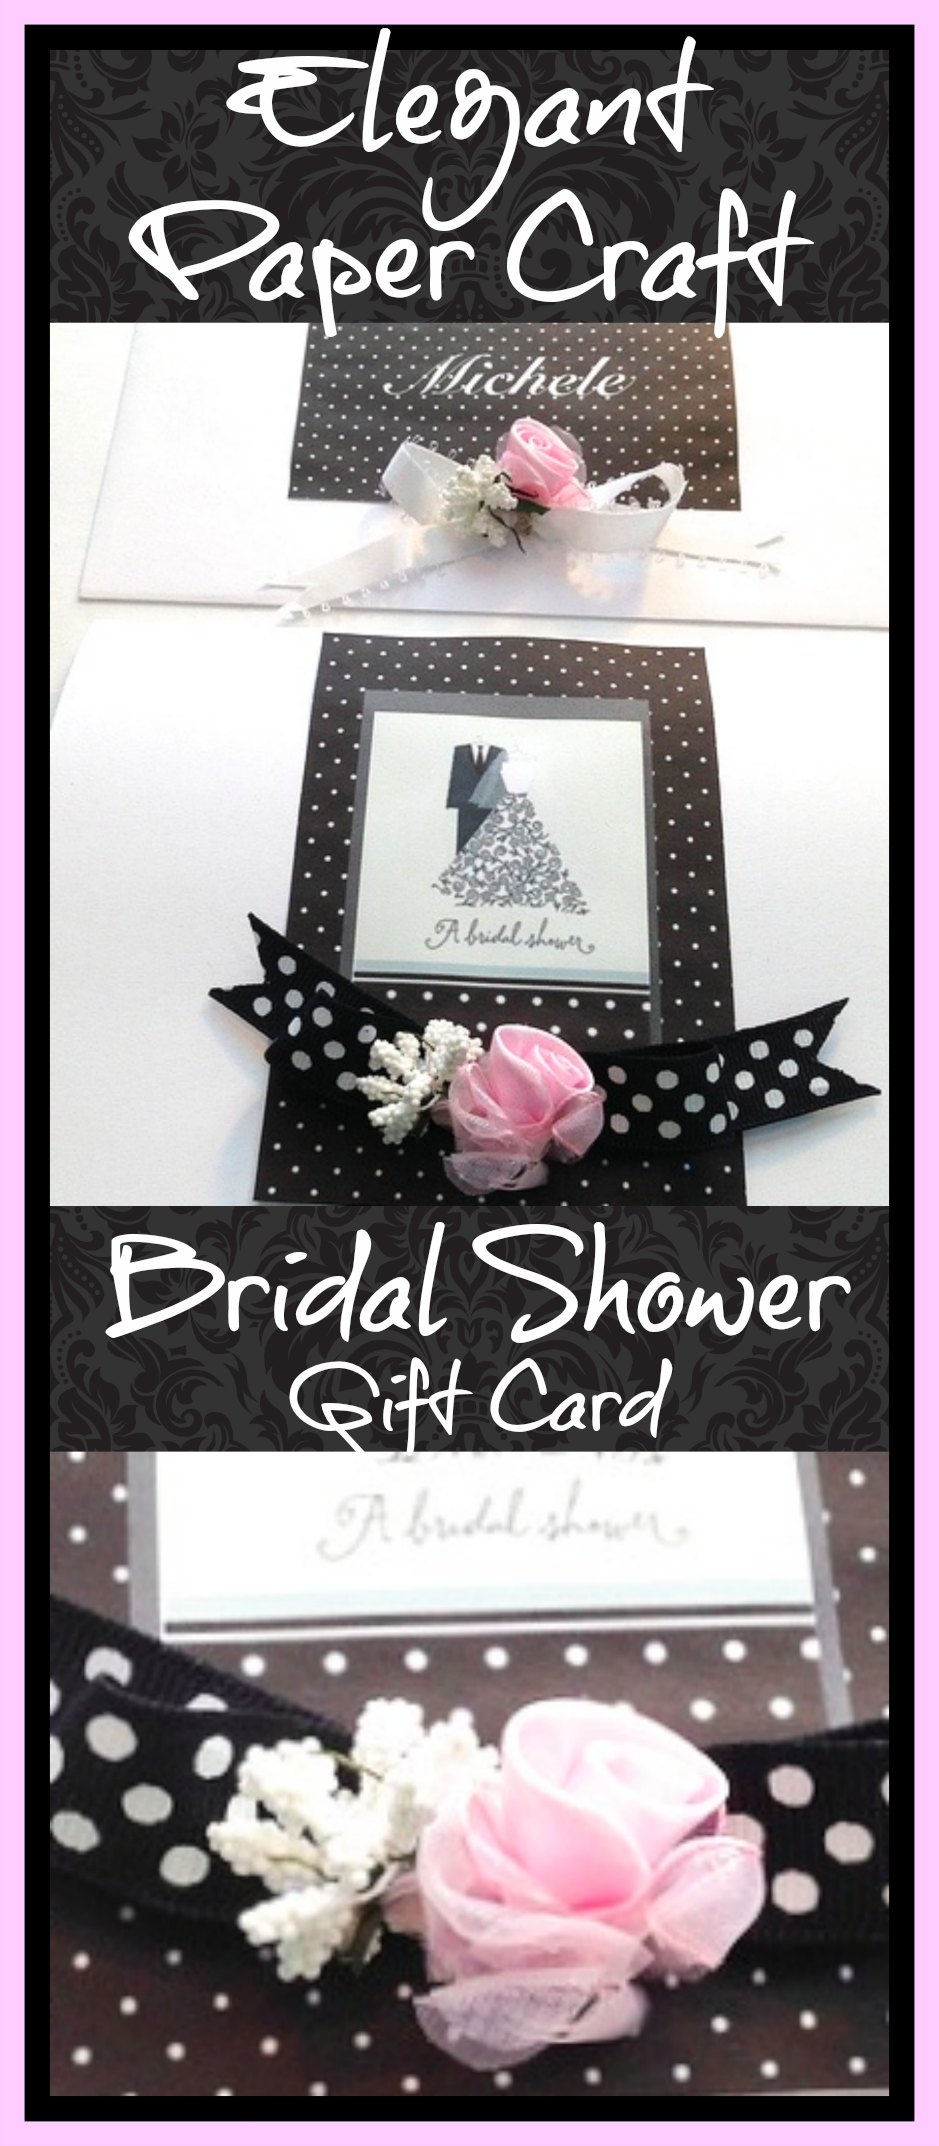 Elegant Paper Craft Bridal Shower